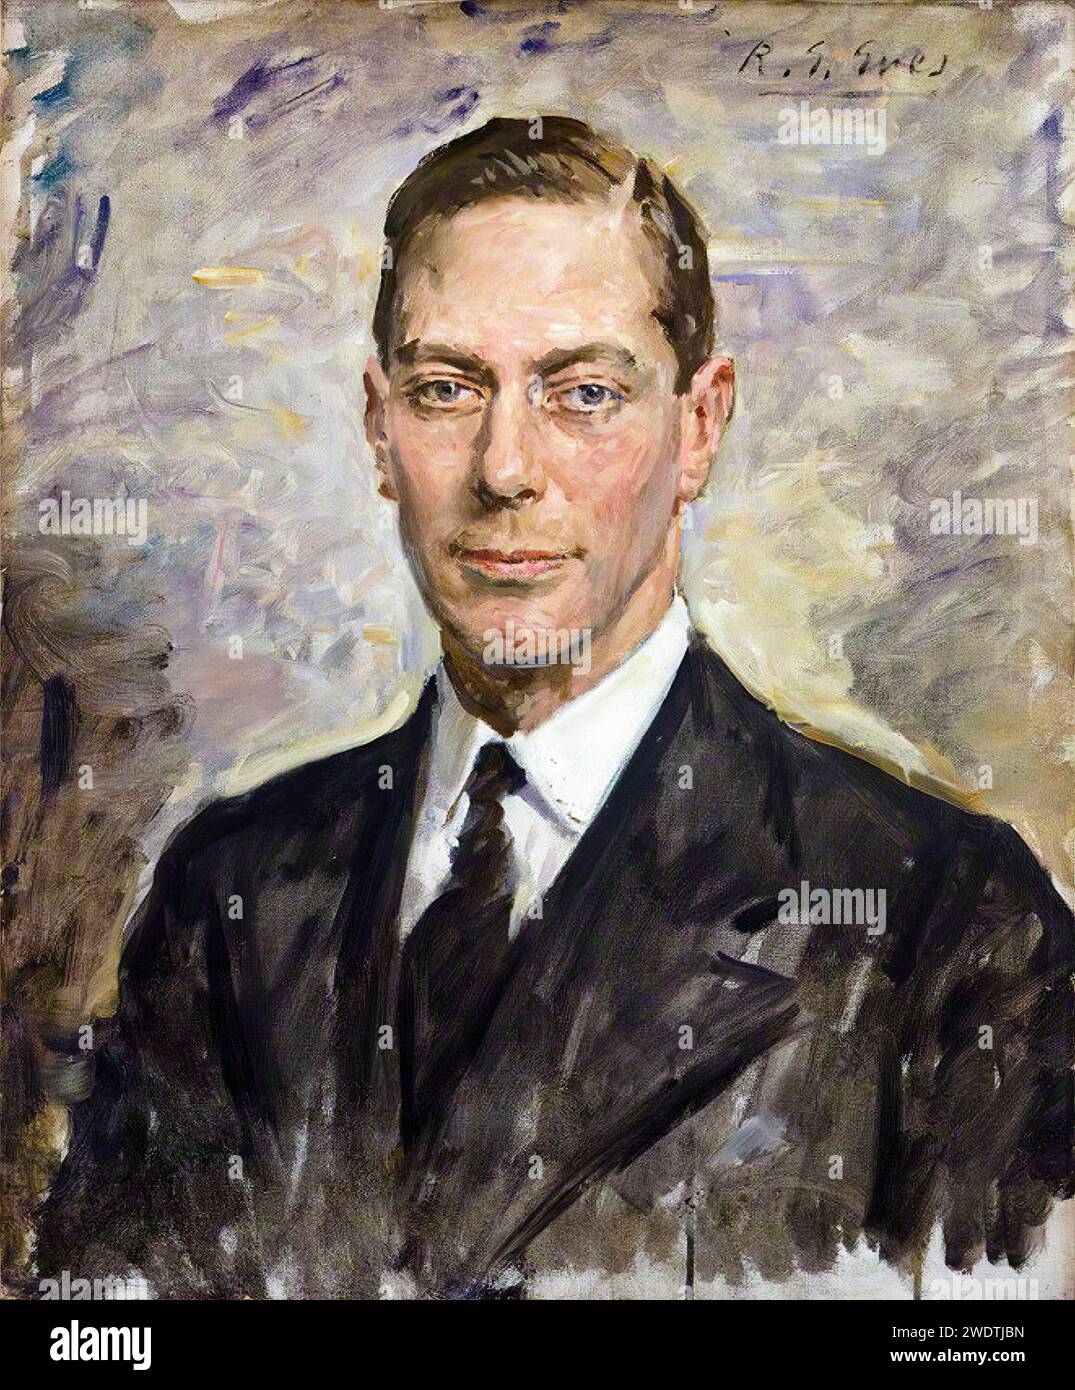 Giorgio vi (1895-1952), Re del Regno Unito (1936-1952), ritratto dipinto ad olio su tela di Reginald Grenville Eves, 1924 Foto Stock